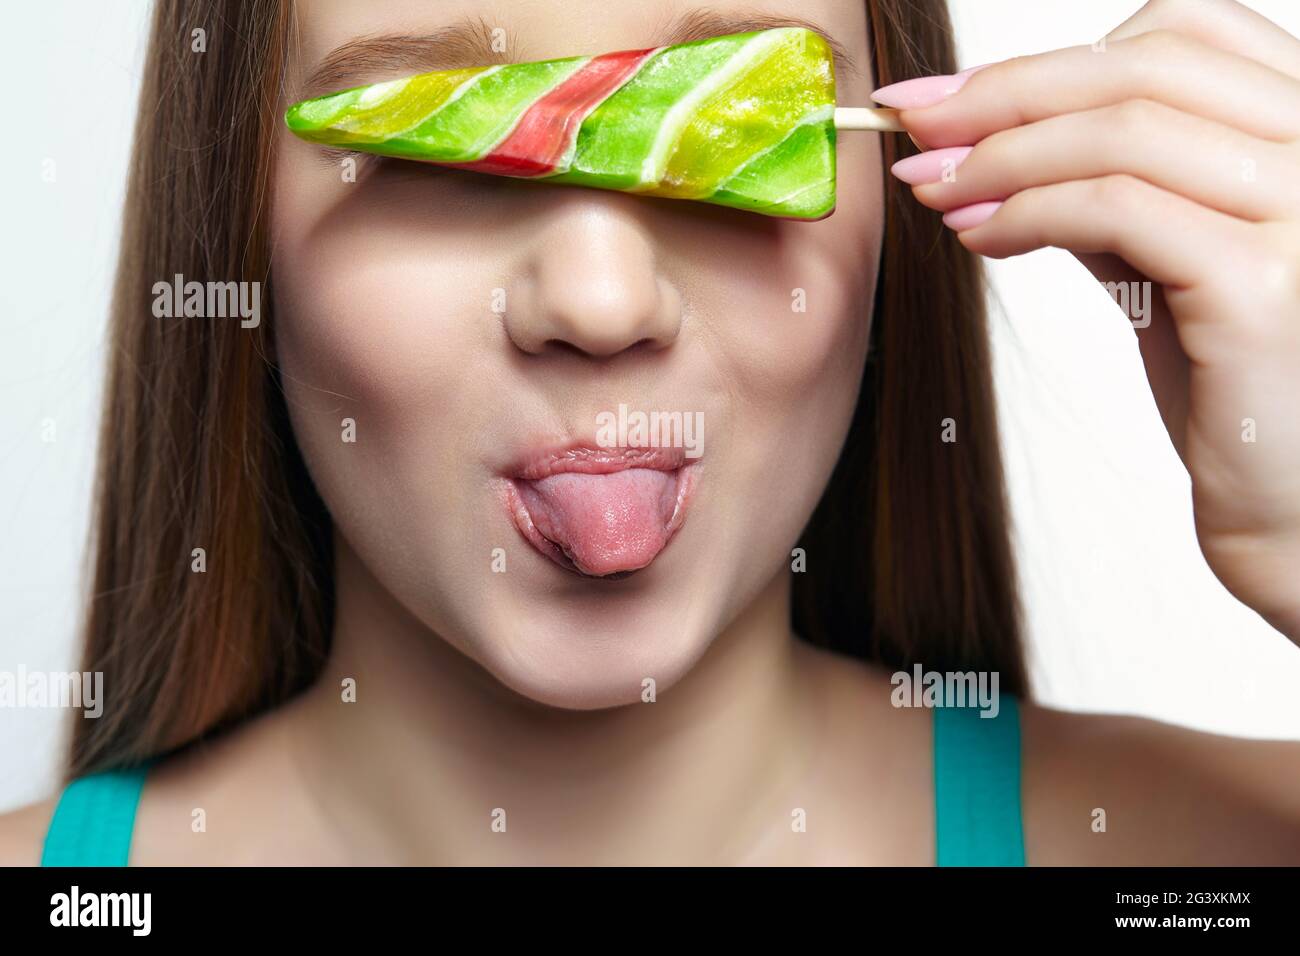 Adolescente ragazza con lollipop fiore in mani chiudere gli occhi e mostrare la lingua. Foto Stock